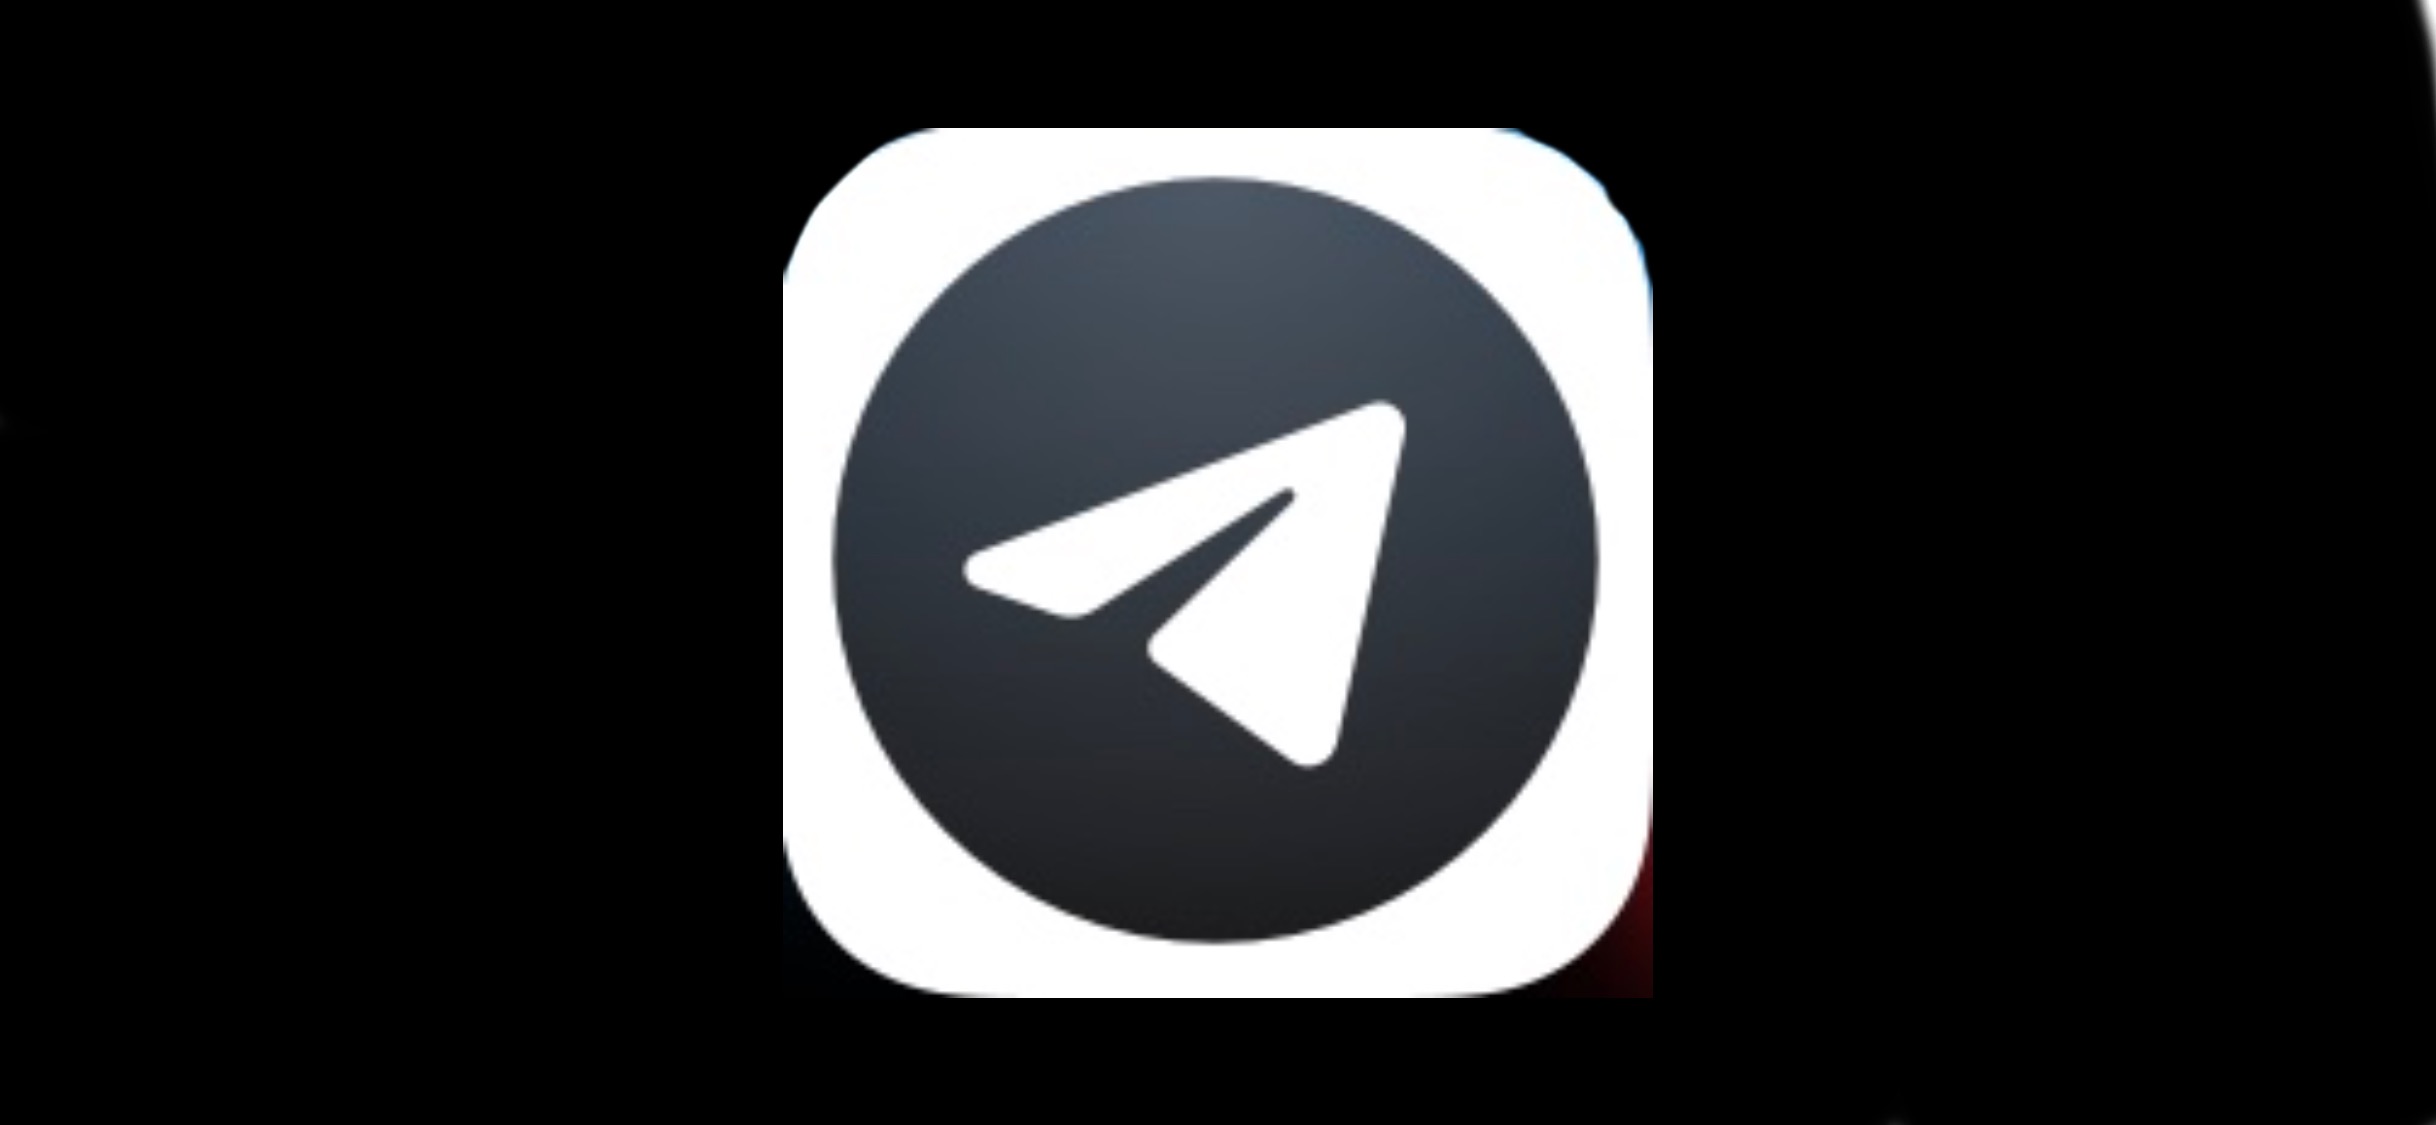 Вышел Telegram X. Чем он отличается от обычного Telegram?